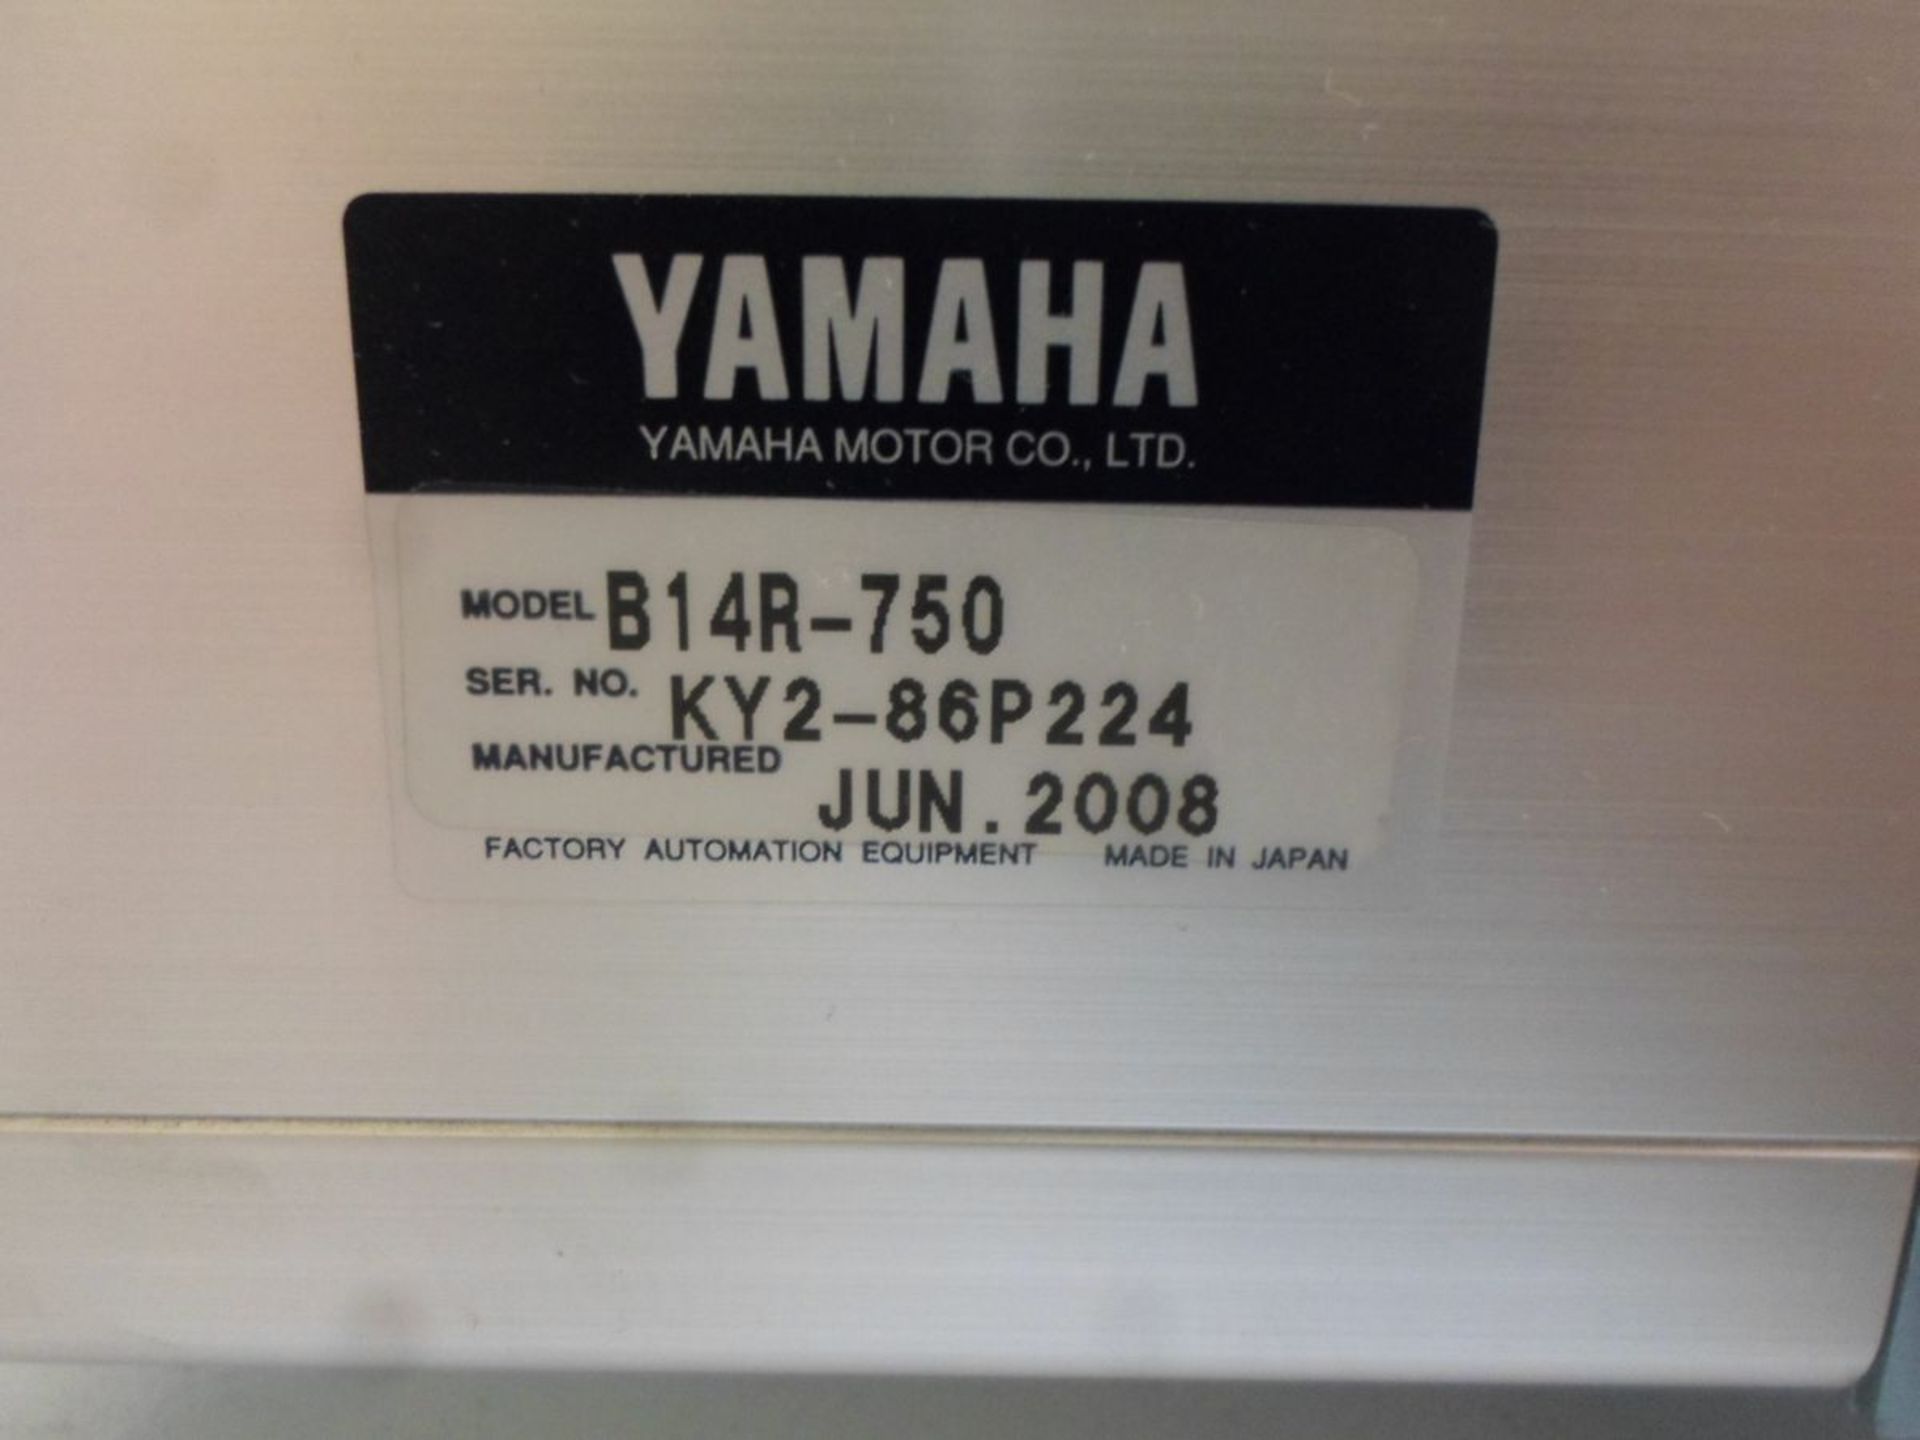 YAMAHA SINGLE AXIS ROBOT ARM B14R-750 - Image 2 of 3